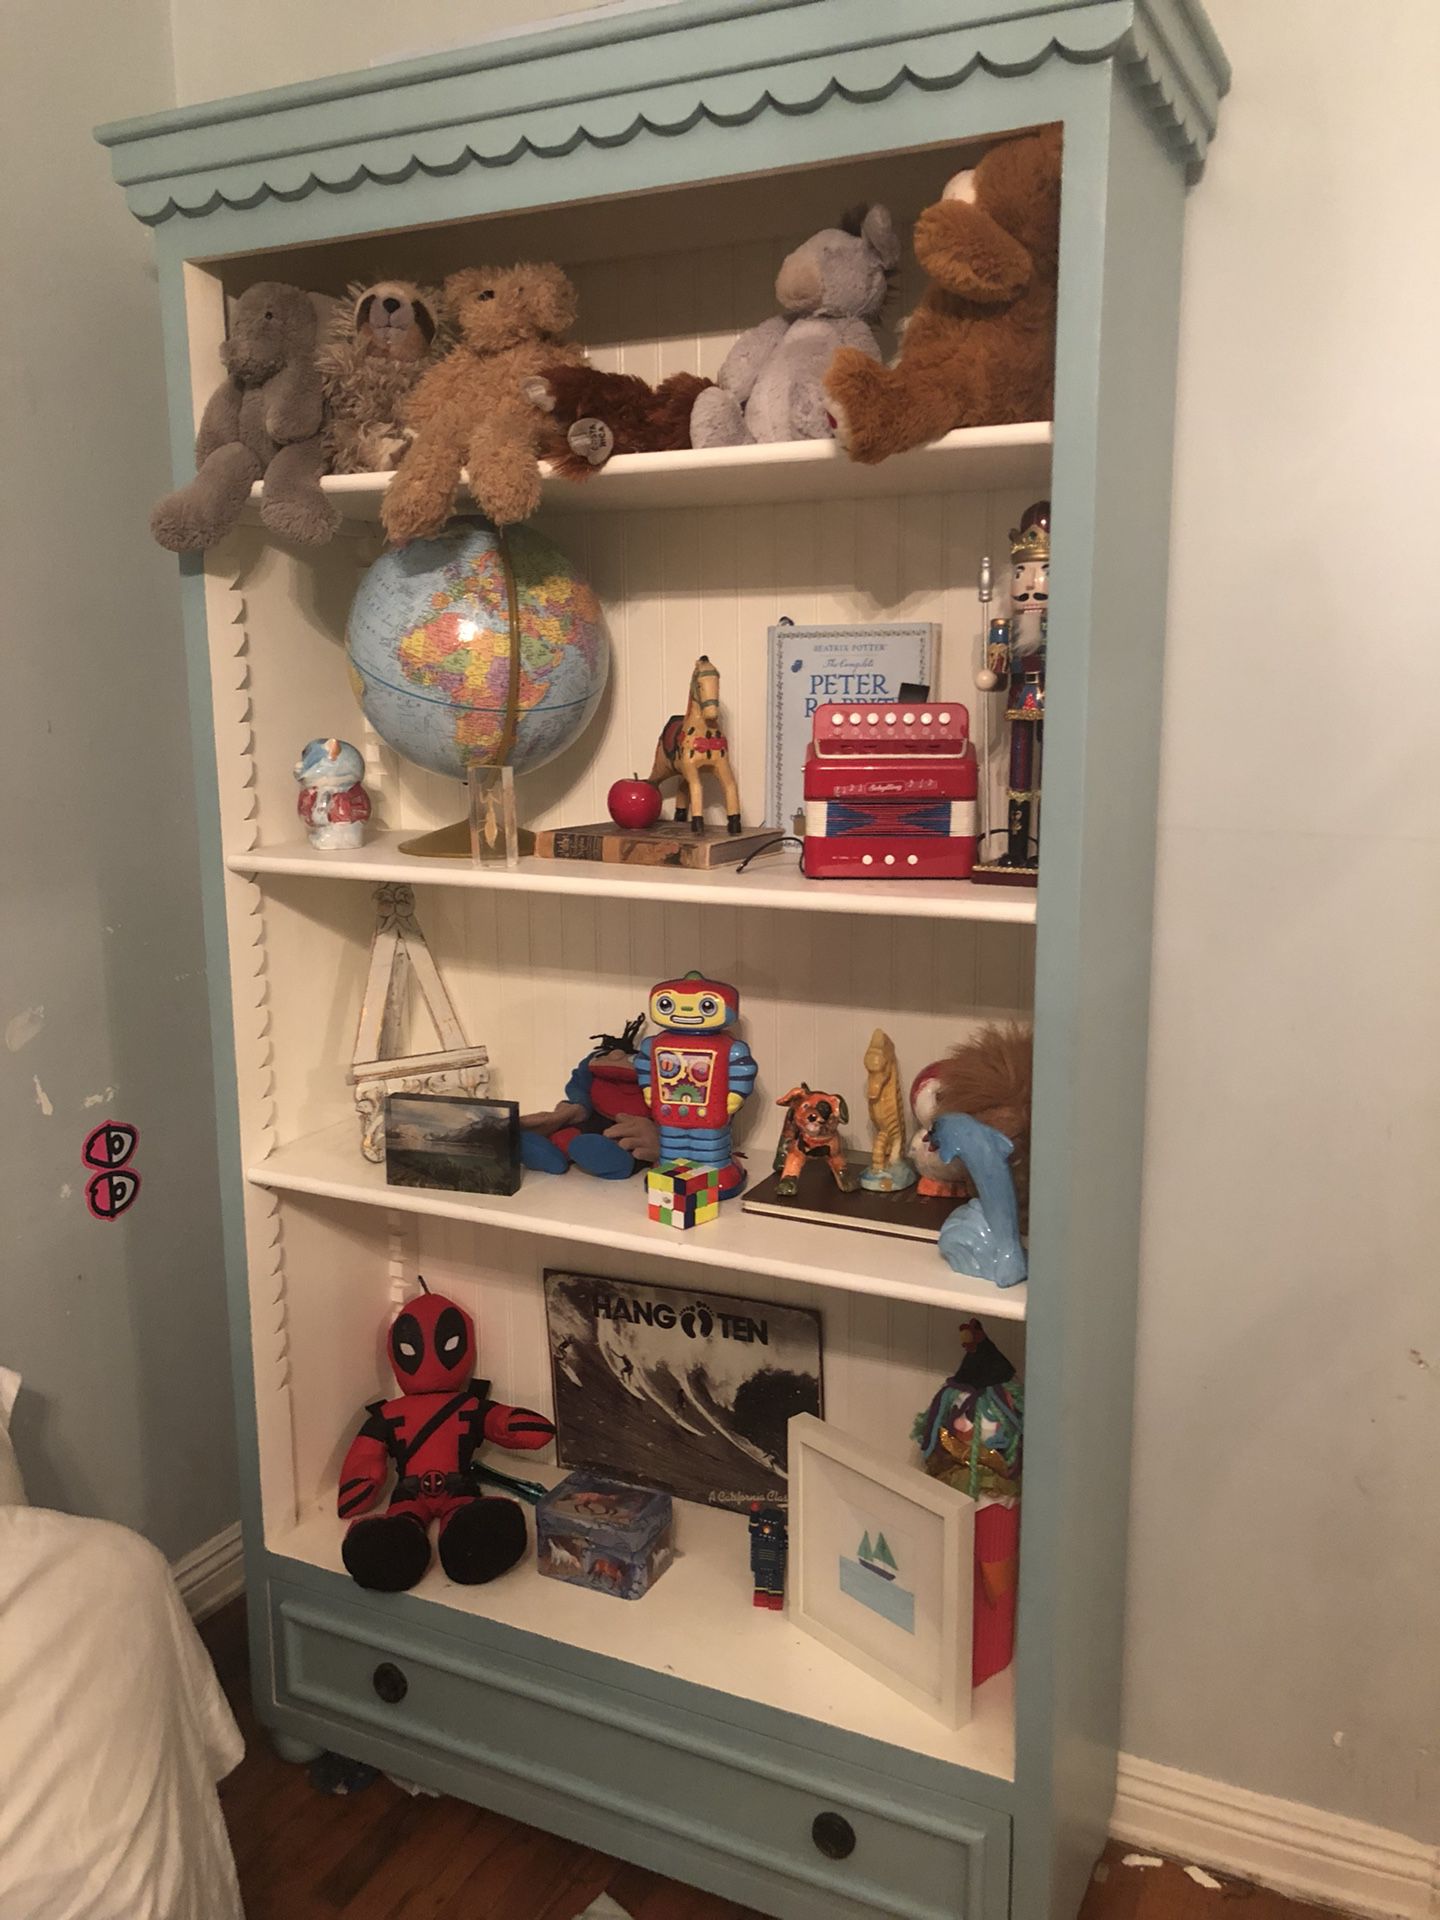 Beautiful custom shelves bookshelf for nursery or bedroom